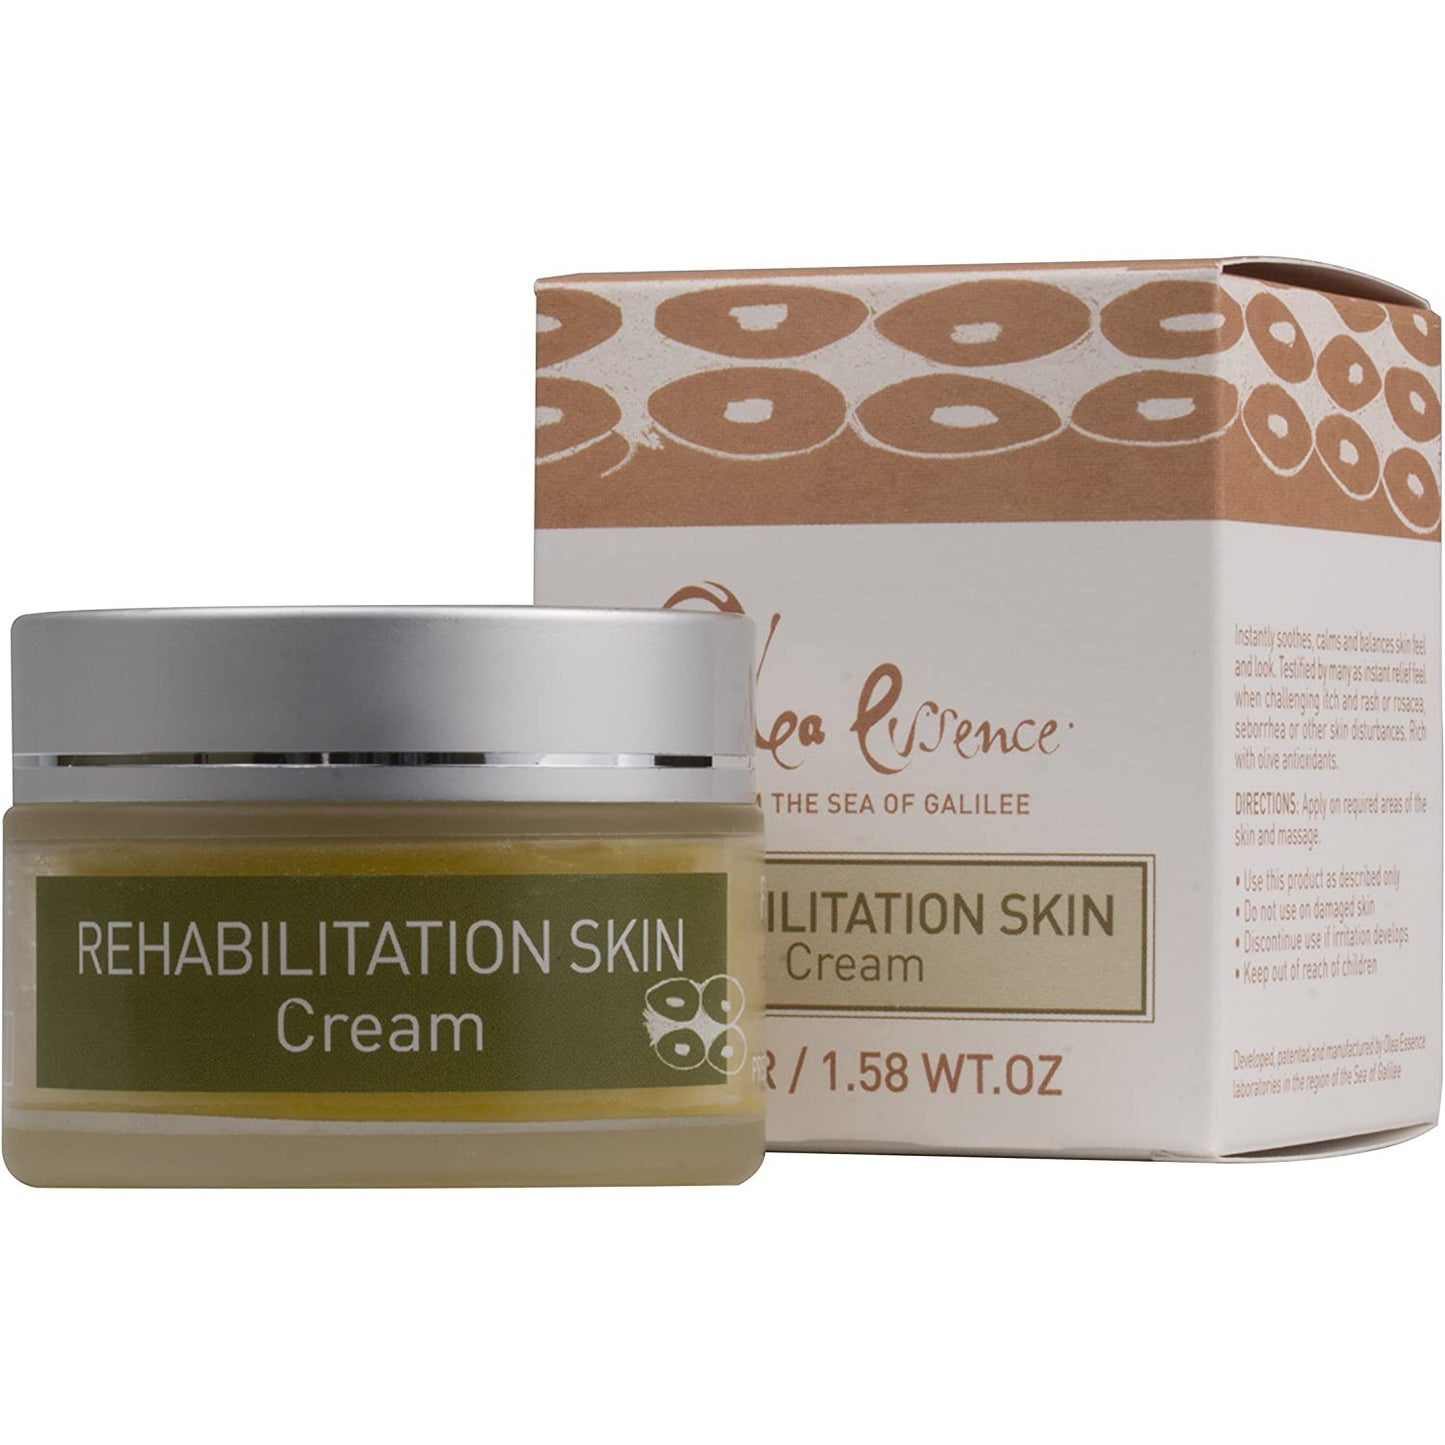 Rehabilitation Skin Cream - Olea Essence - Israel Menu